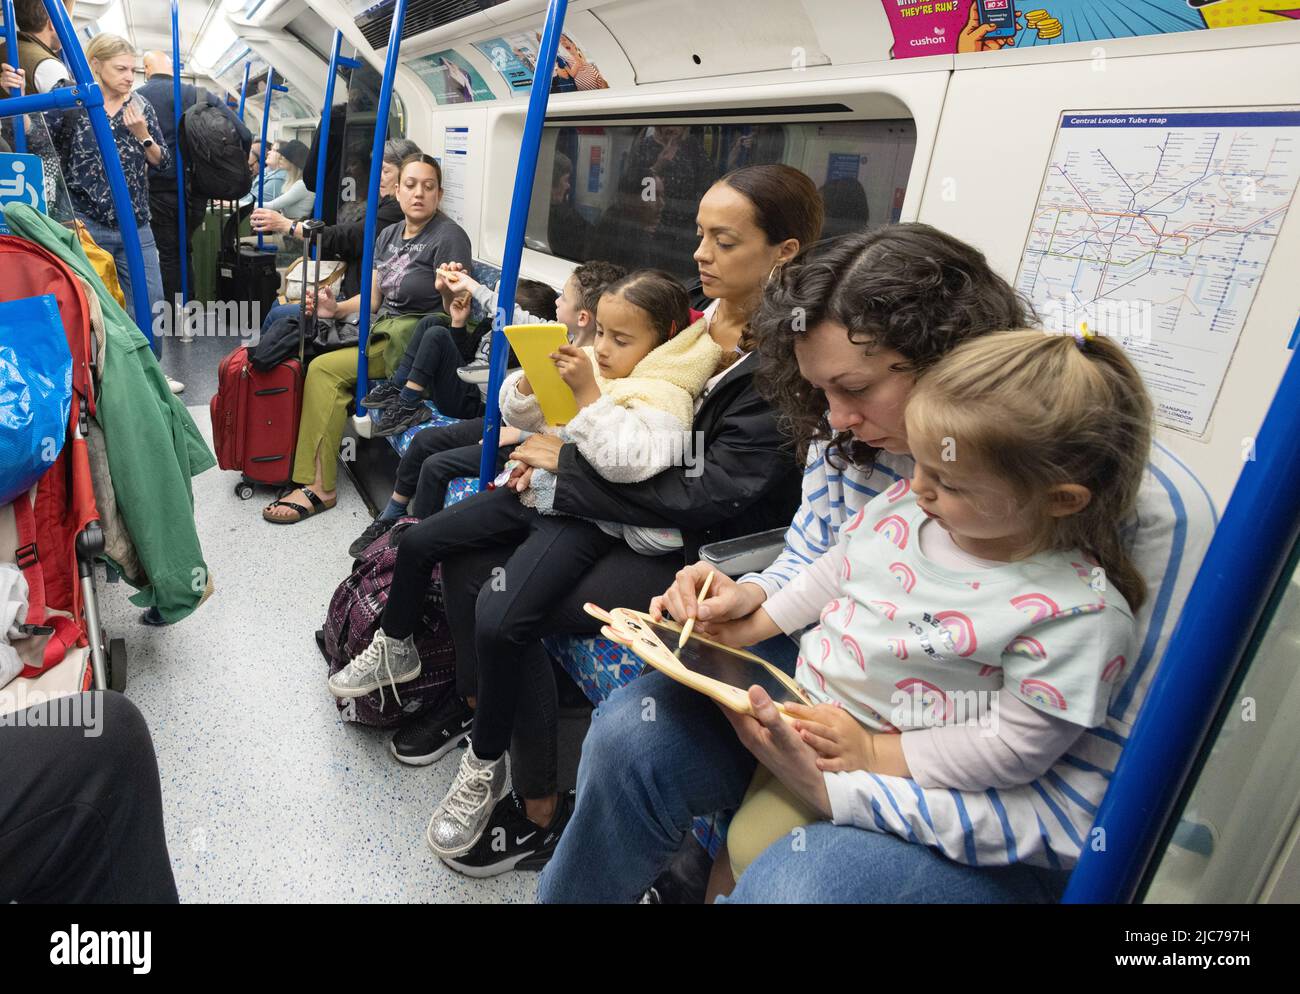 Les enfants de Londres; les mères qui divertirent leurs enfants dans une voiture de train souterraine de Londres, London transport, TFL, Londres Angleterre Royaume-Uni Banque D'Images